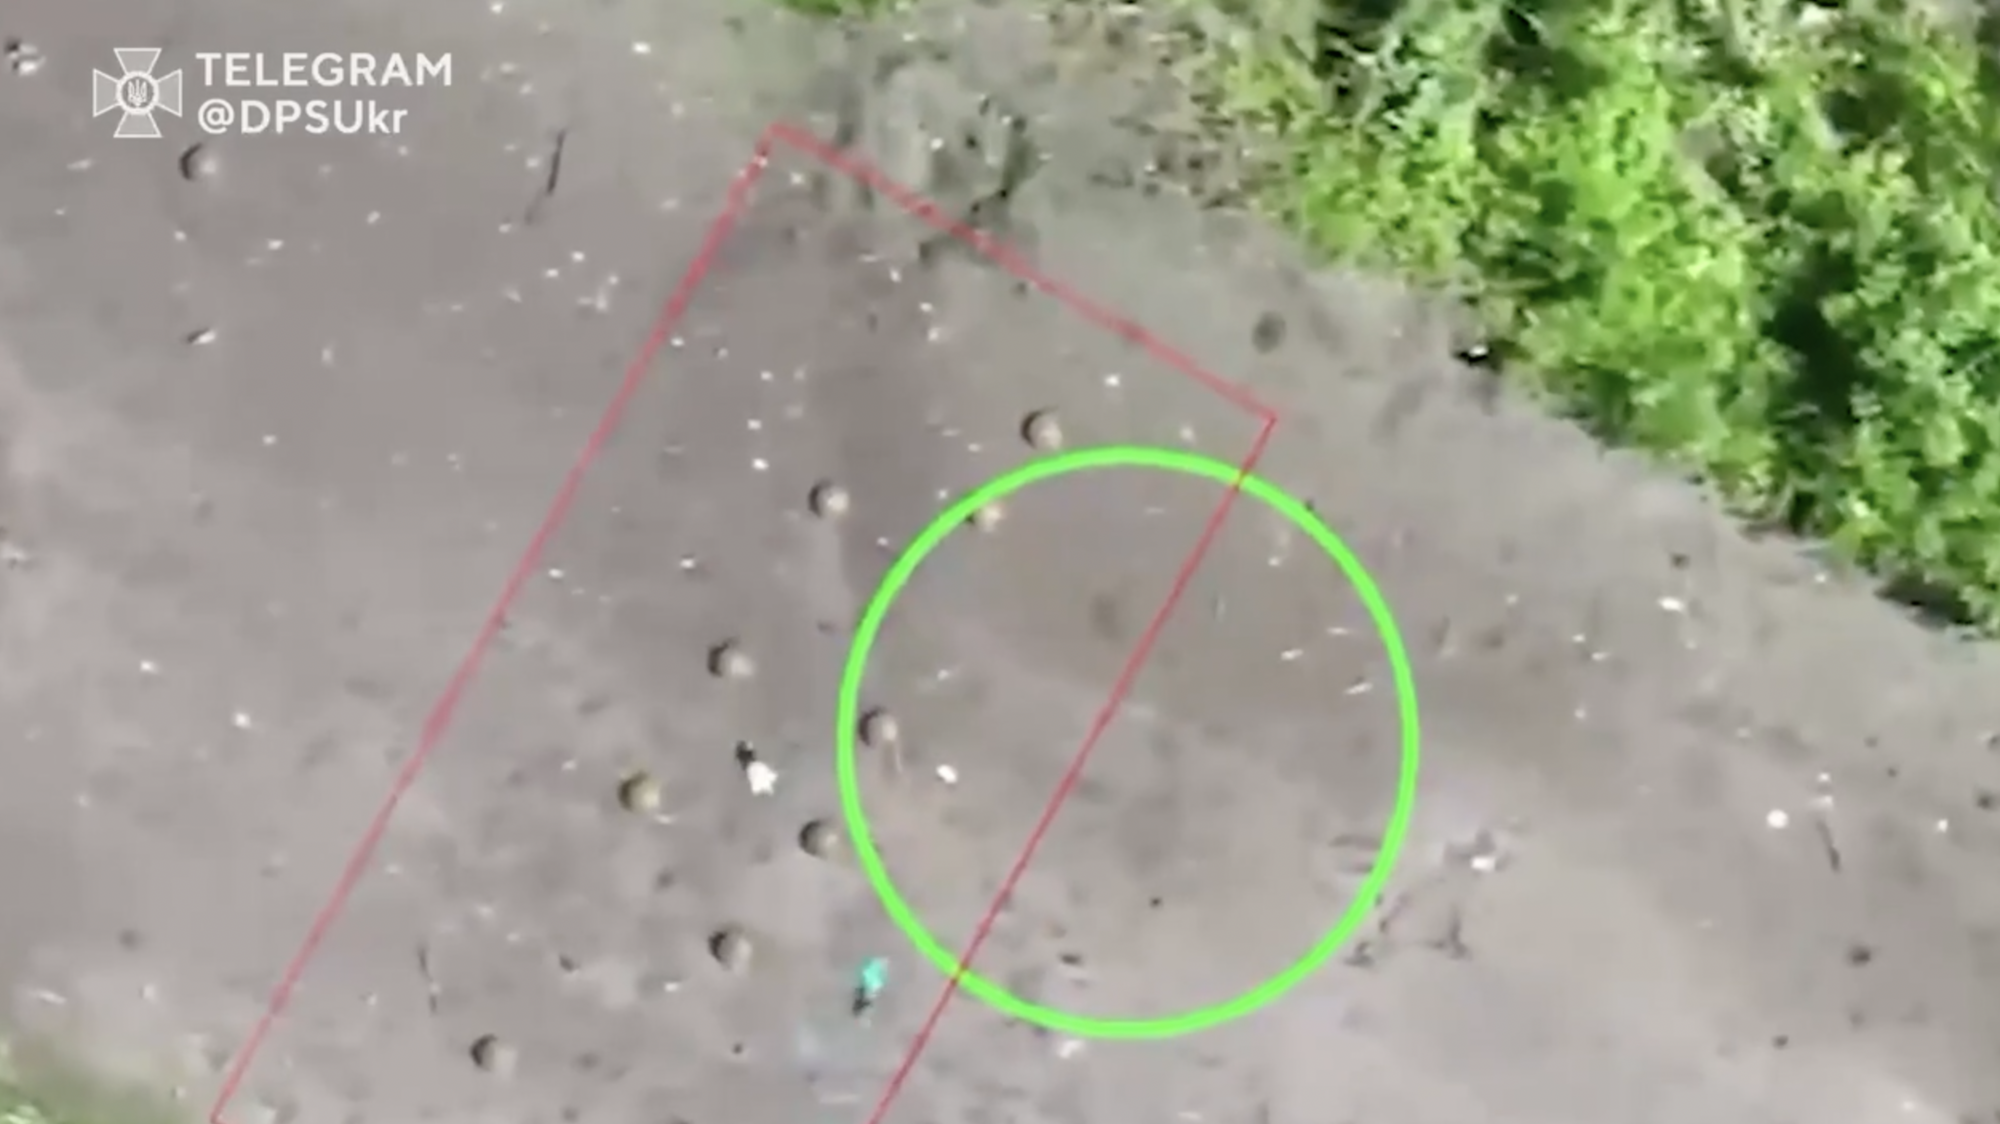 Два в одном: украинские пограничники под Бахмутом уничтожили российские минно-взрывные заграждения вместе с пехотой. Видео